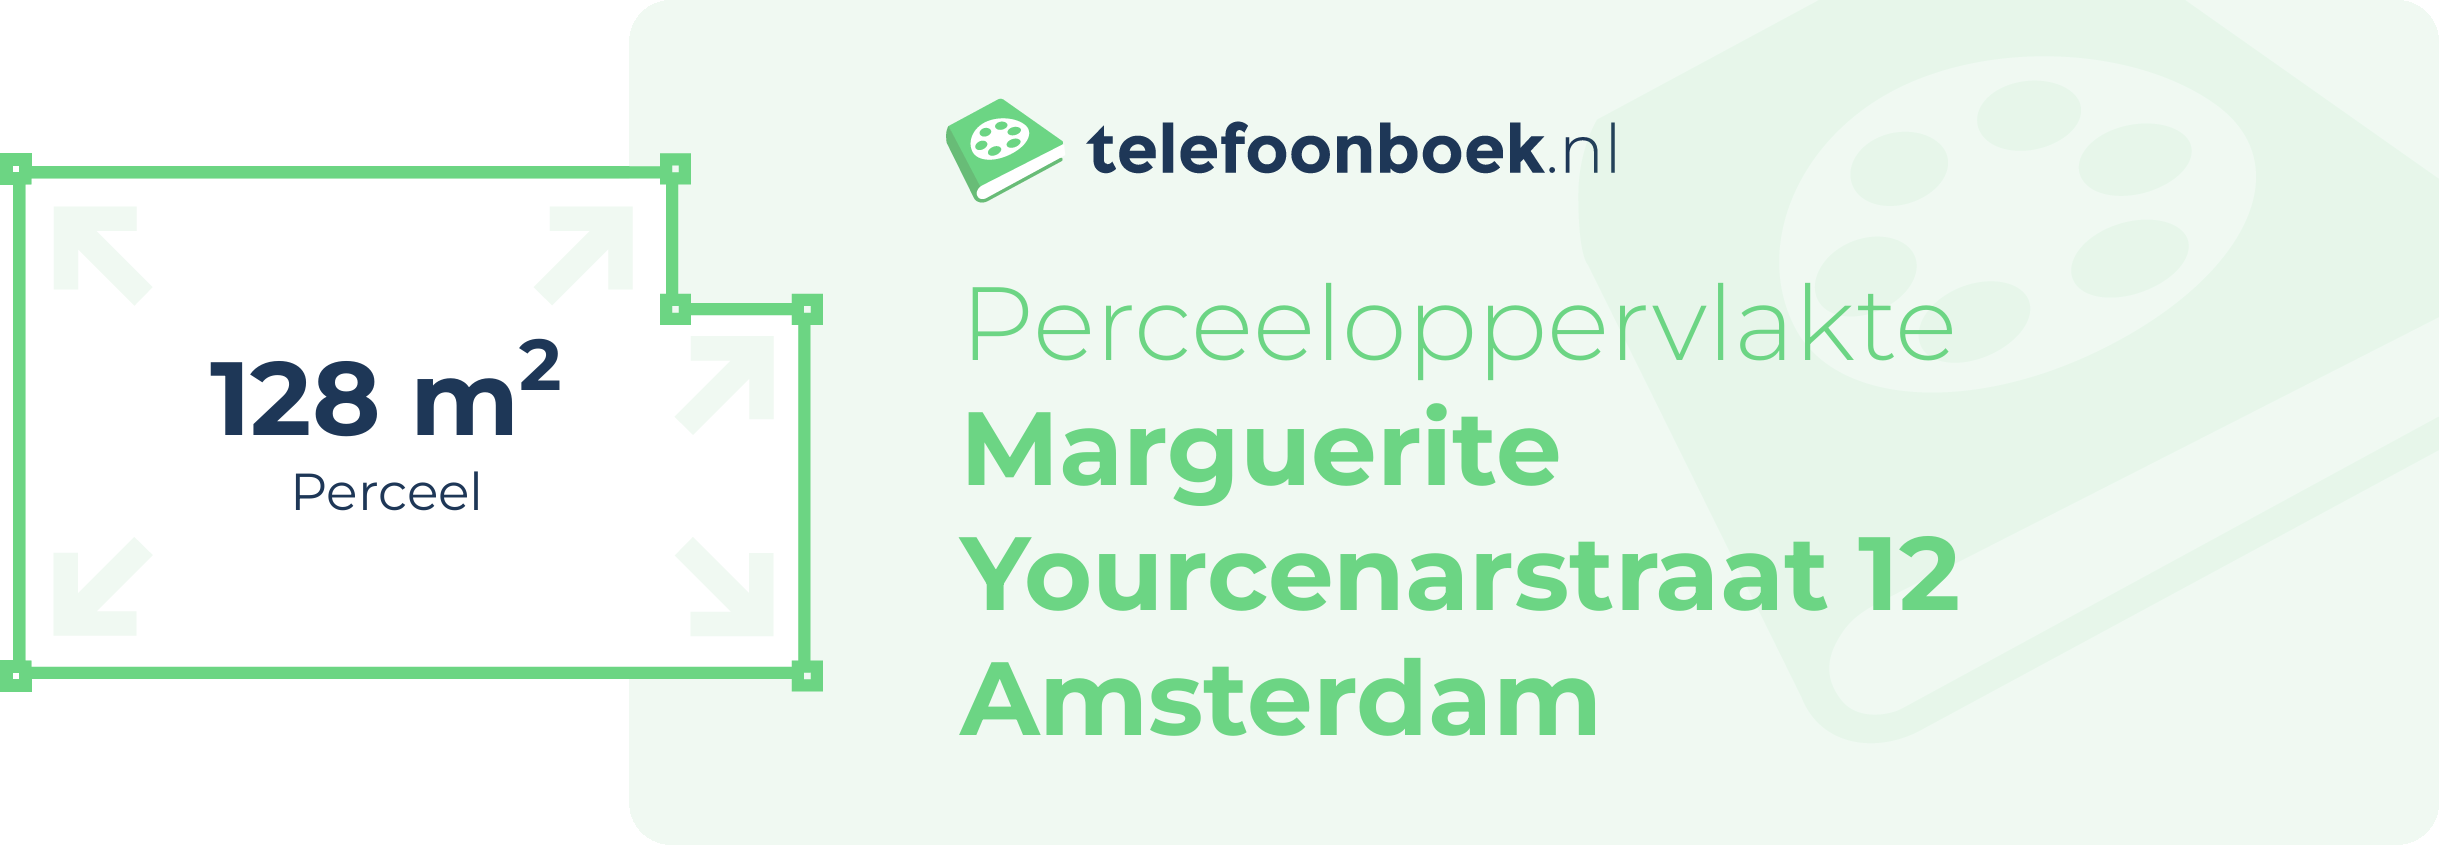 Perceeloppervlakte Marguerite Yourcenarstraat 12 Amsterdam